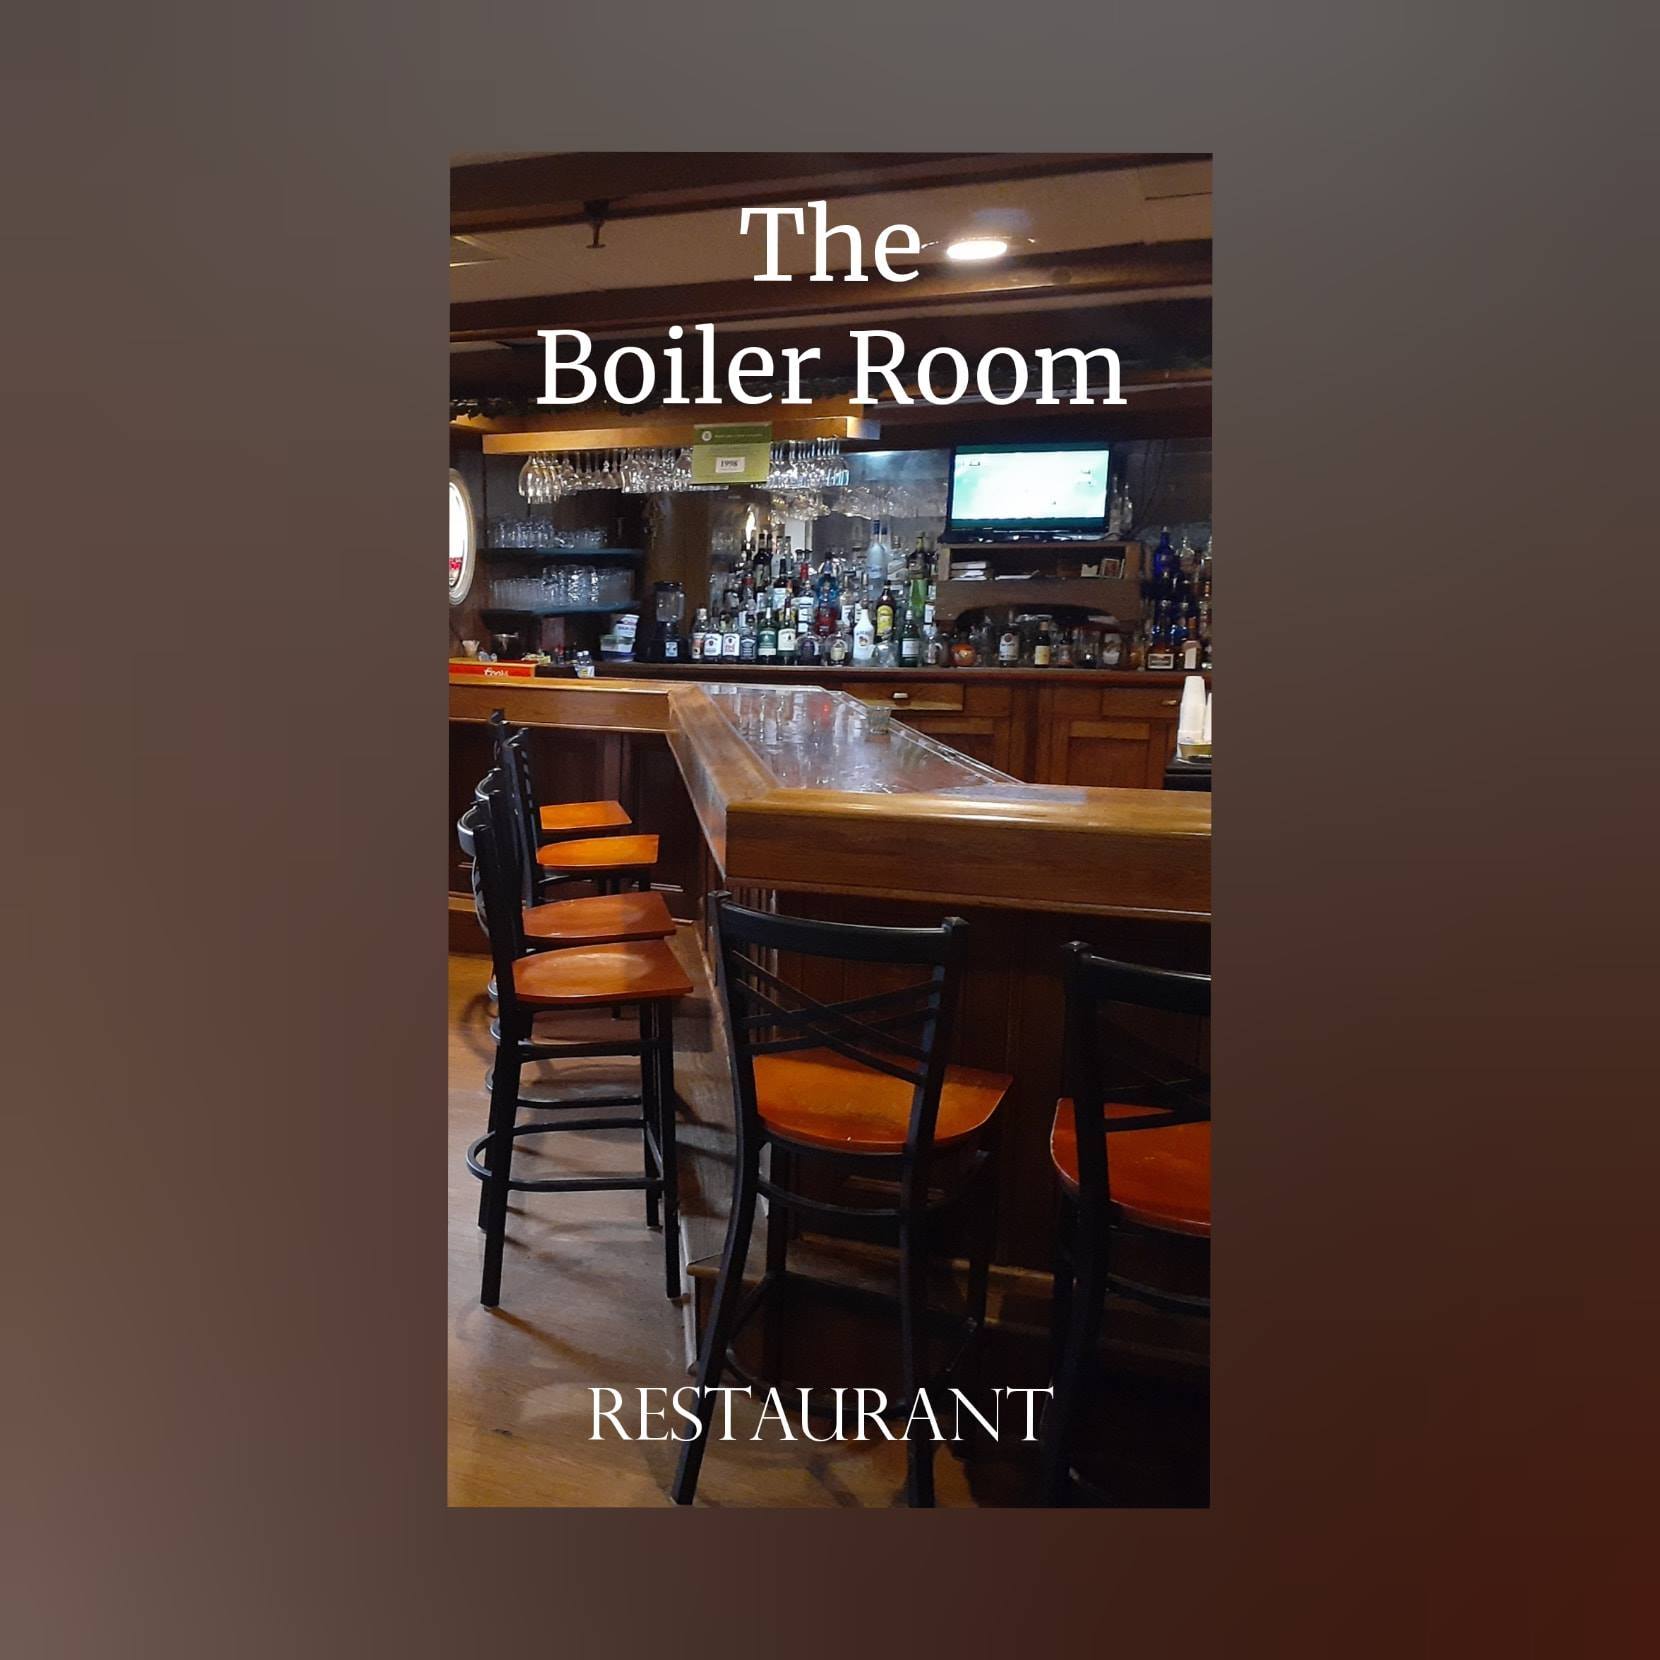 The Boiler Room Restaurant